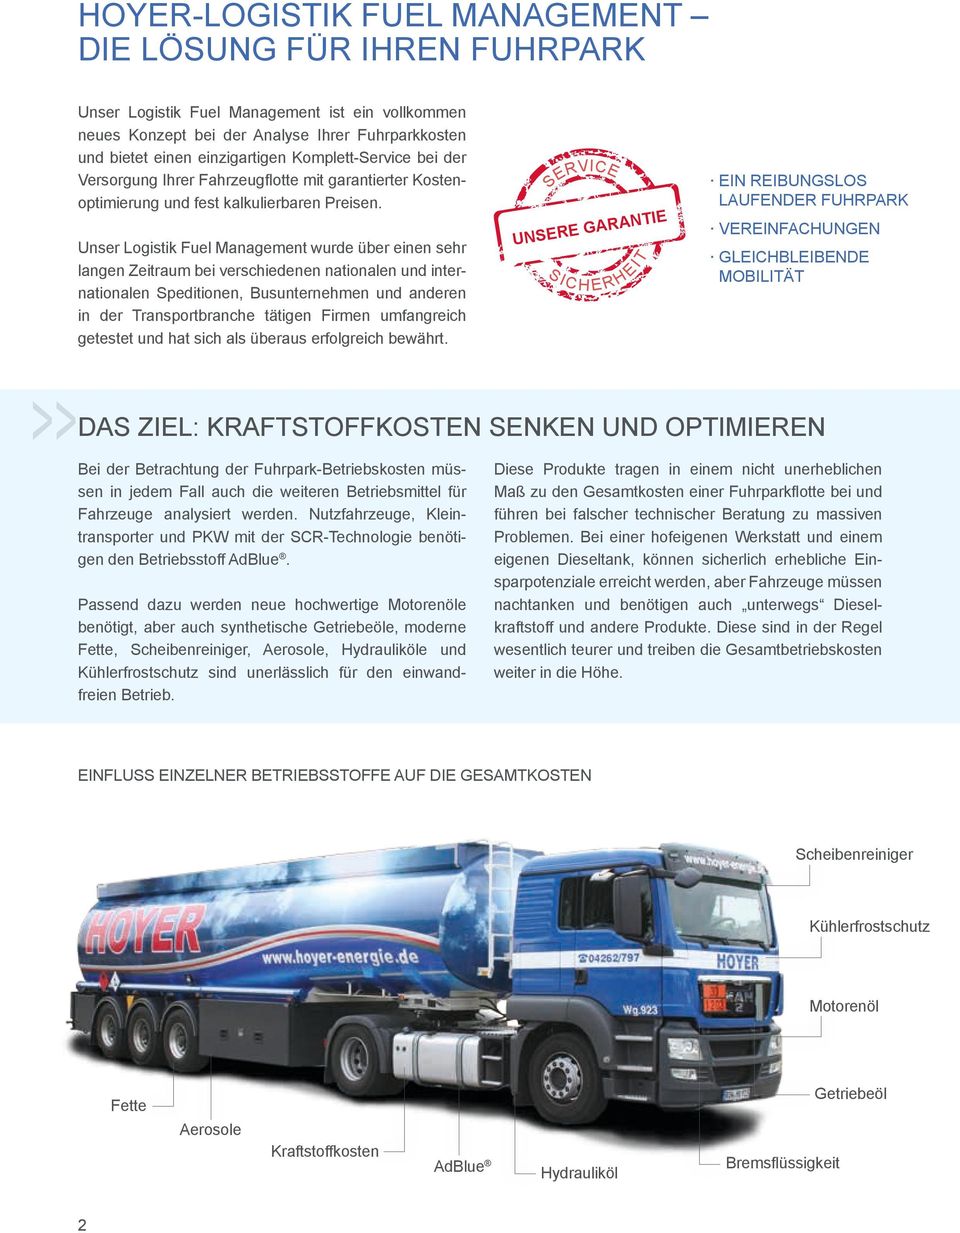 Unser Logistik Fuel Management wurde über einen sehr langen Zeitraum bei verschiedenen nationalen und internationalen Speditionen, Busunternehmen und anderen in der Transportbranche tätigen Firmen